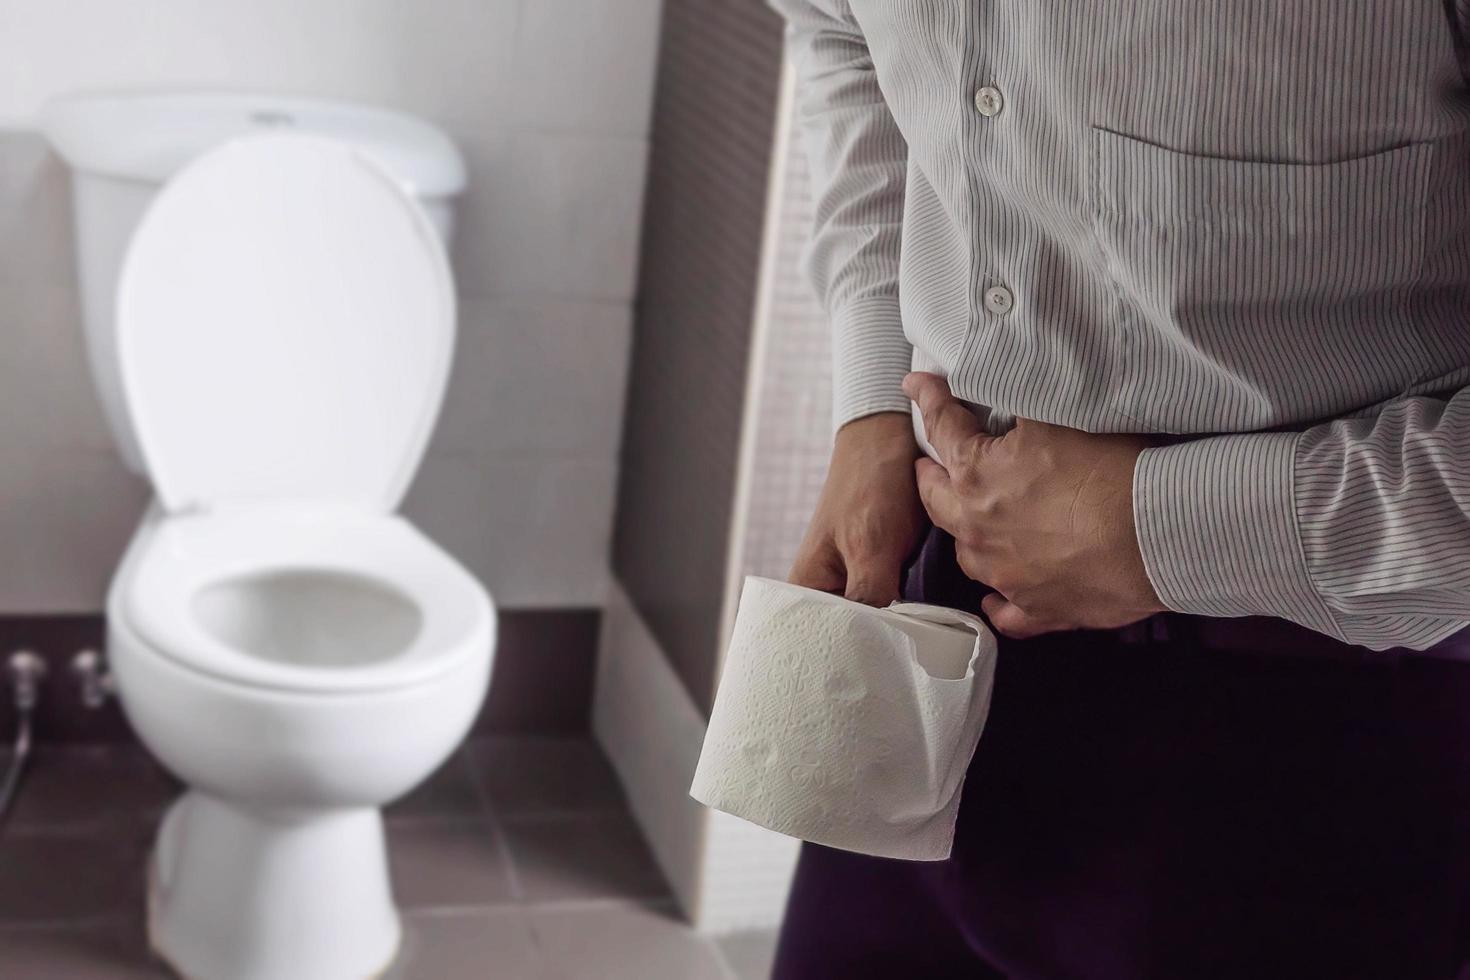 homem segurando tecido perto de um vaso sanitário - problema de saúde do estômago foto